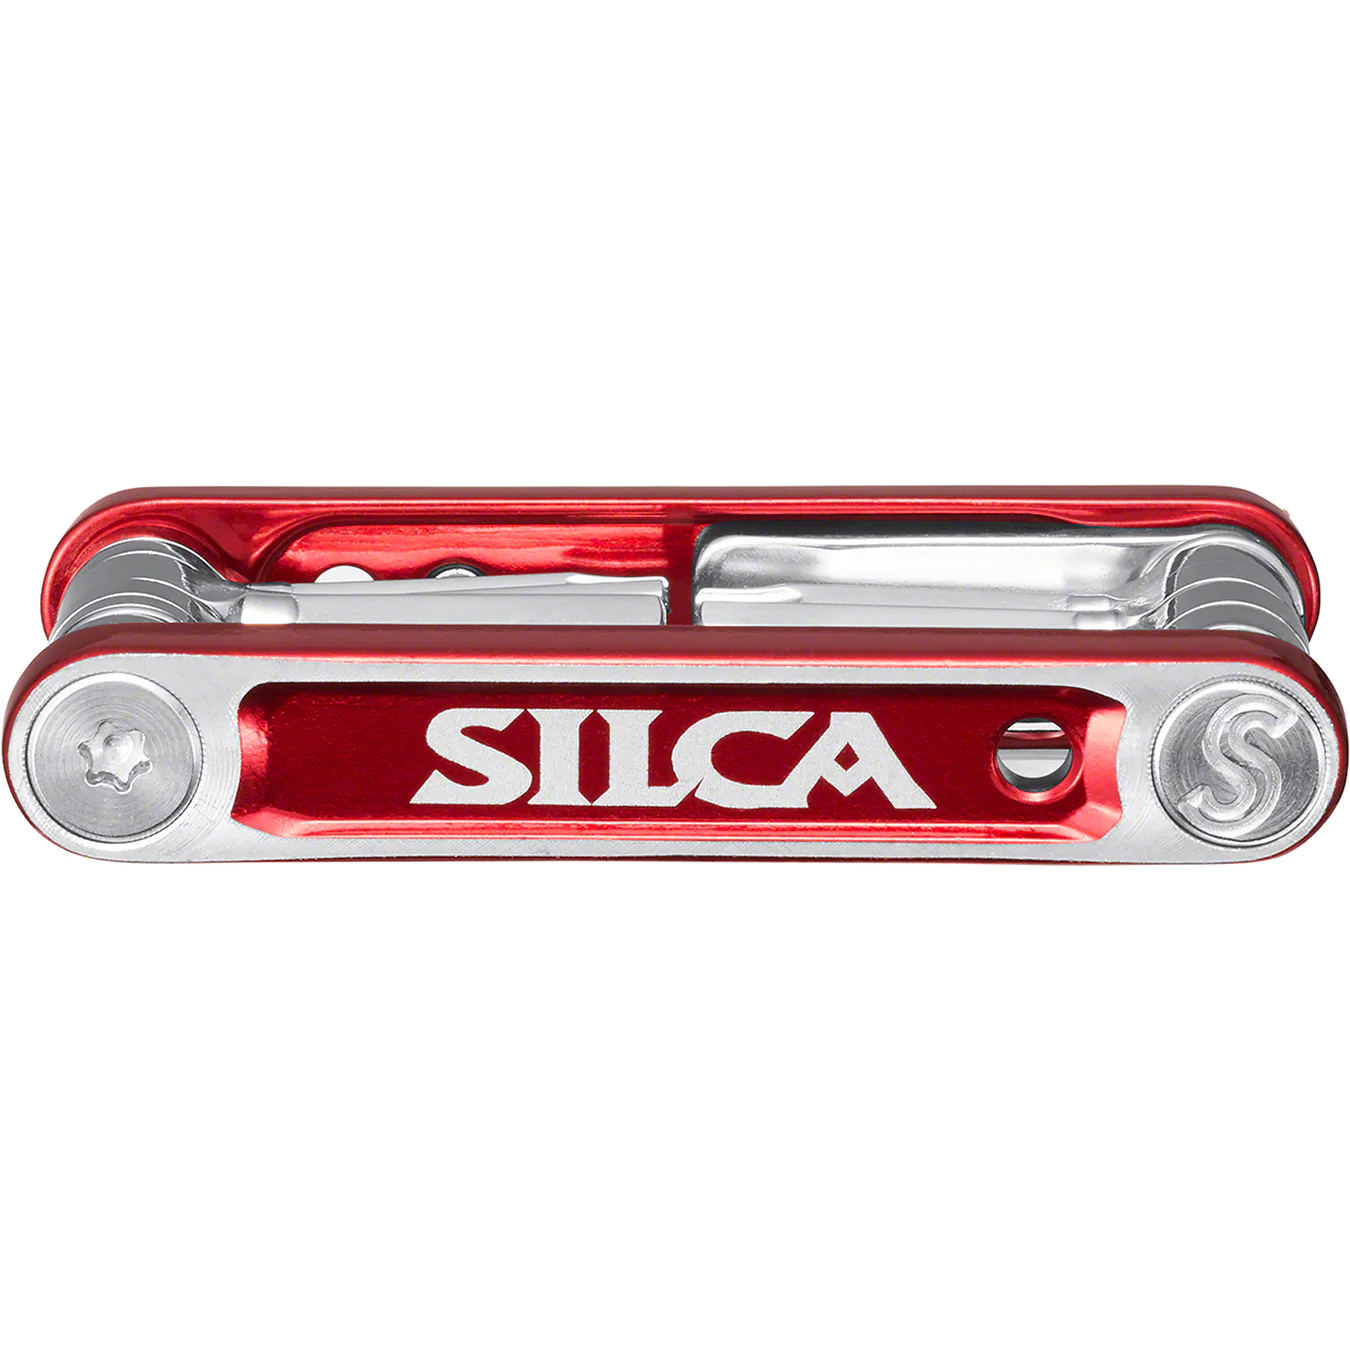 Supreme Supreme®/Silca Bike Tool